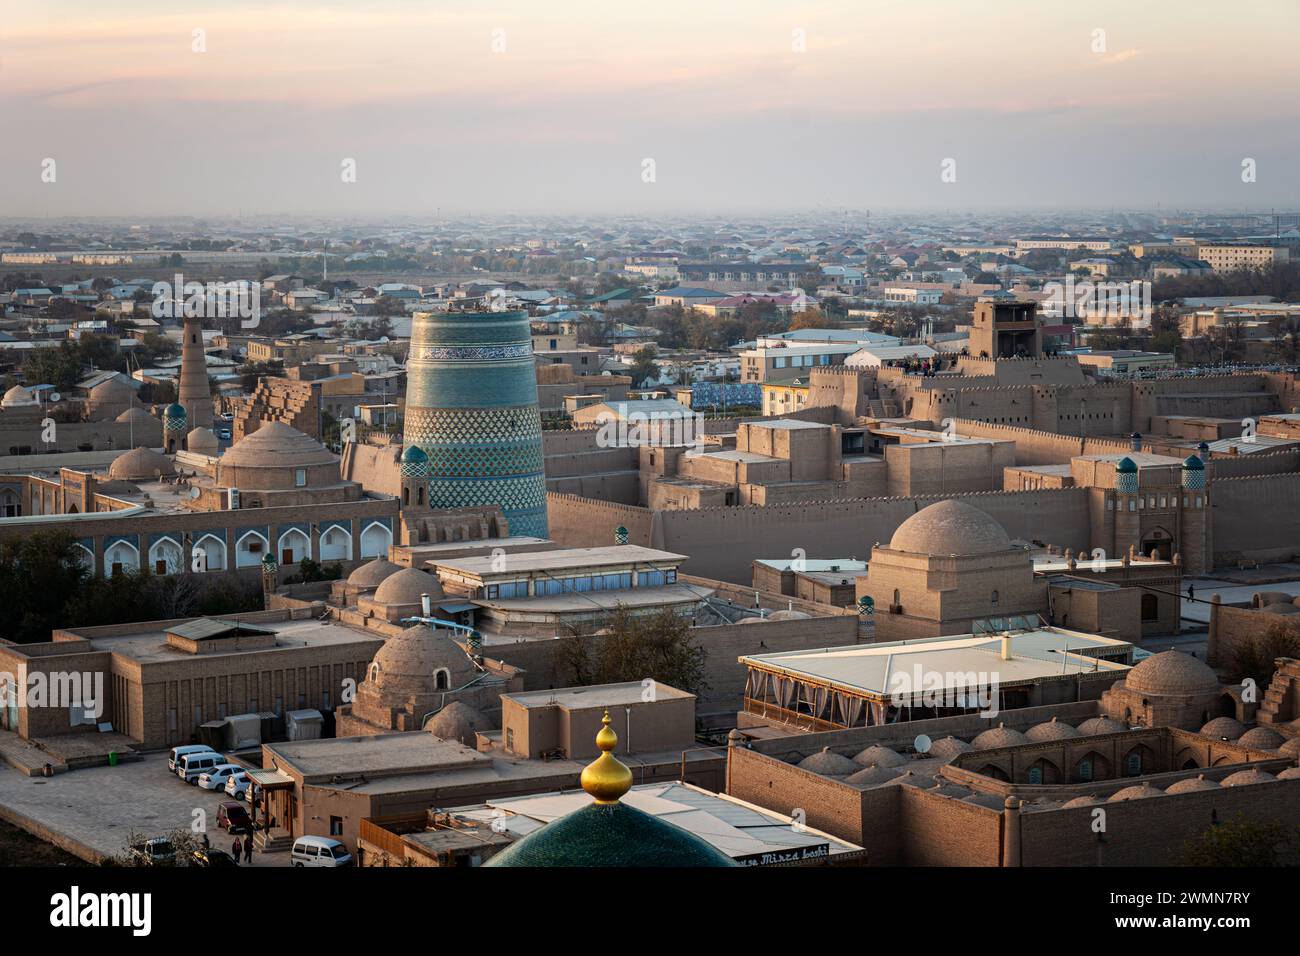 Sunet con vista panoramica e architettura persiana nell'antica città della via della seta di Bukhara, Uzbekistan, complesso religioso islamico po-i-Kalan, Kalyan Foto Stock